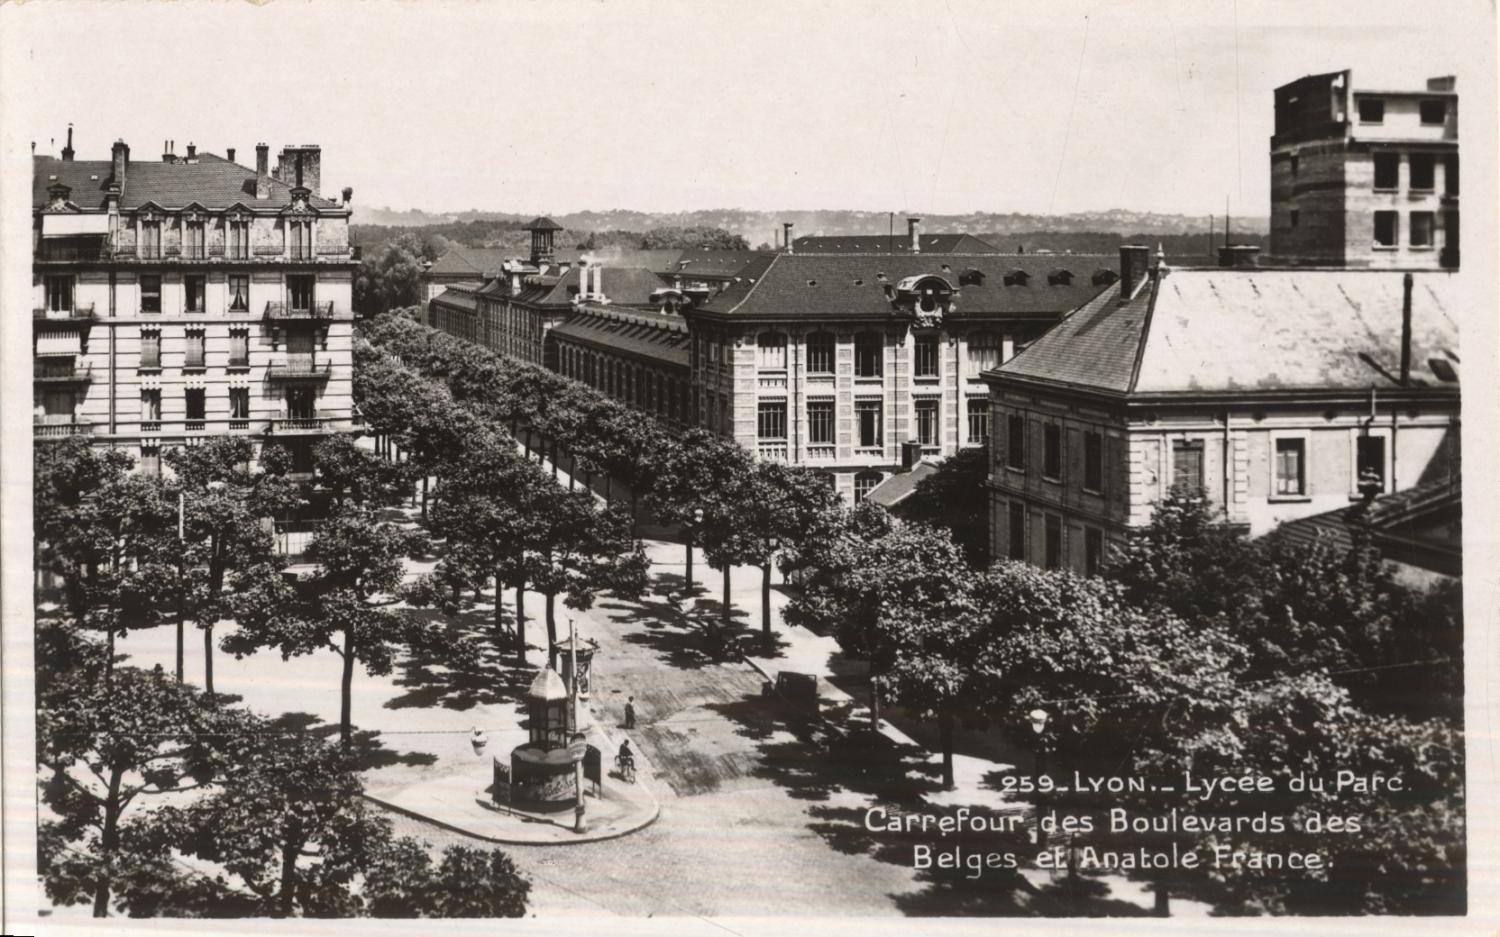 Lyon : Lycée du Parc ; Carrefour des Boulevards des Belges et Anatole France